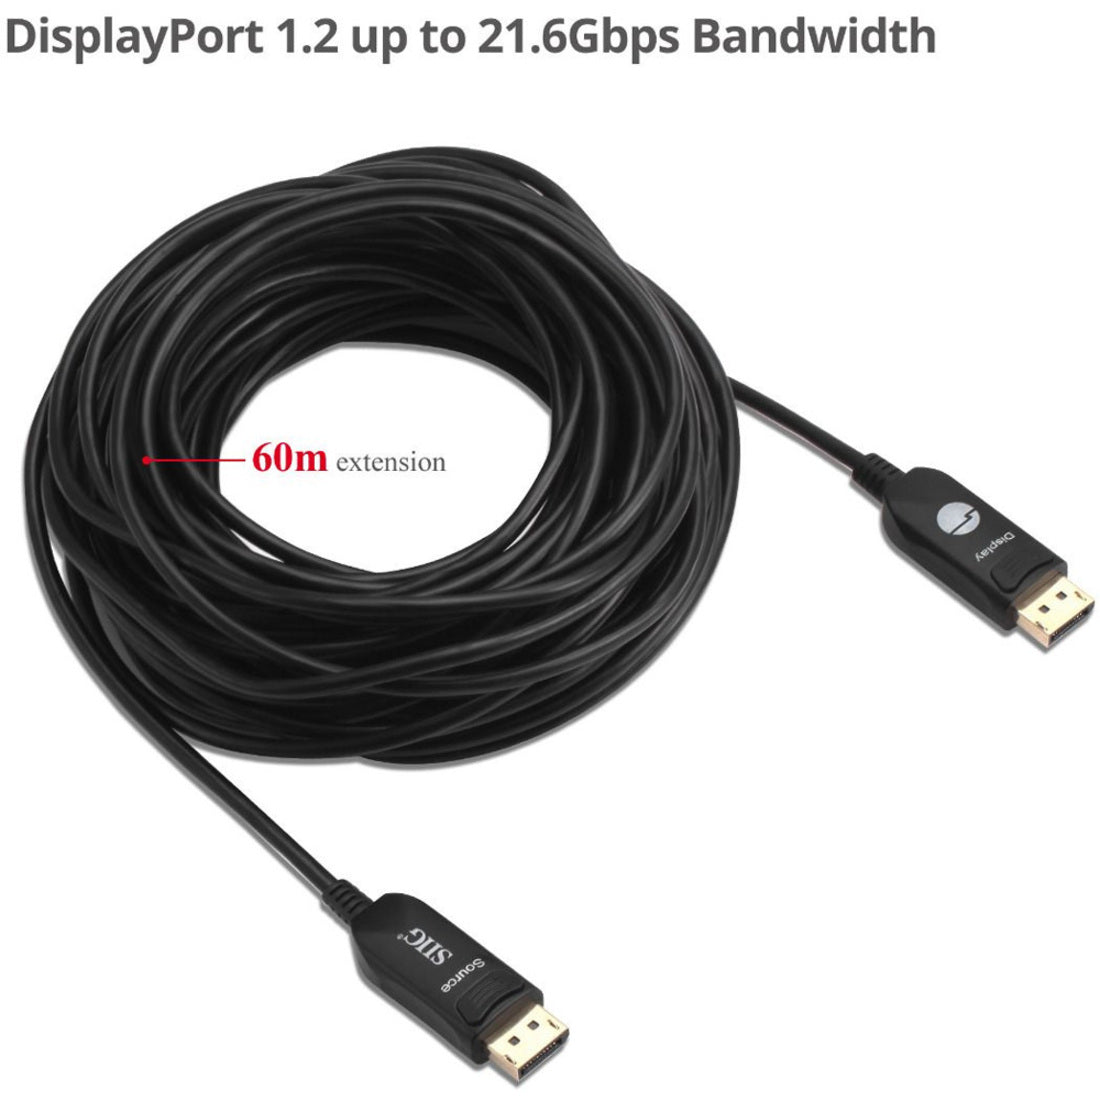 SIIG 4K DisplayPort 1.2 AOC Cable - 60M